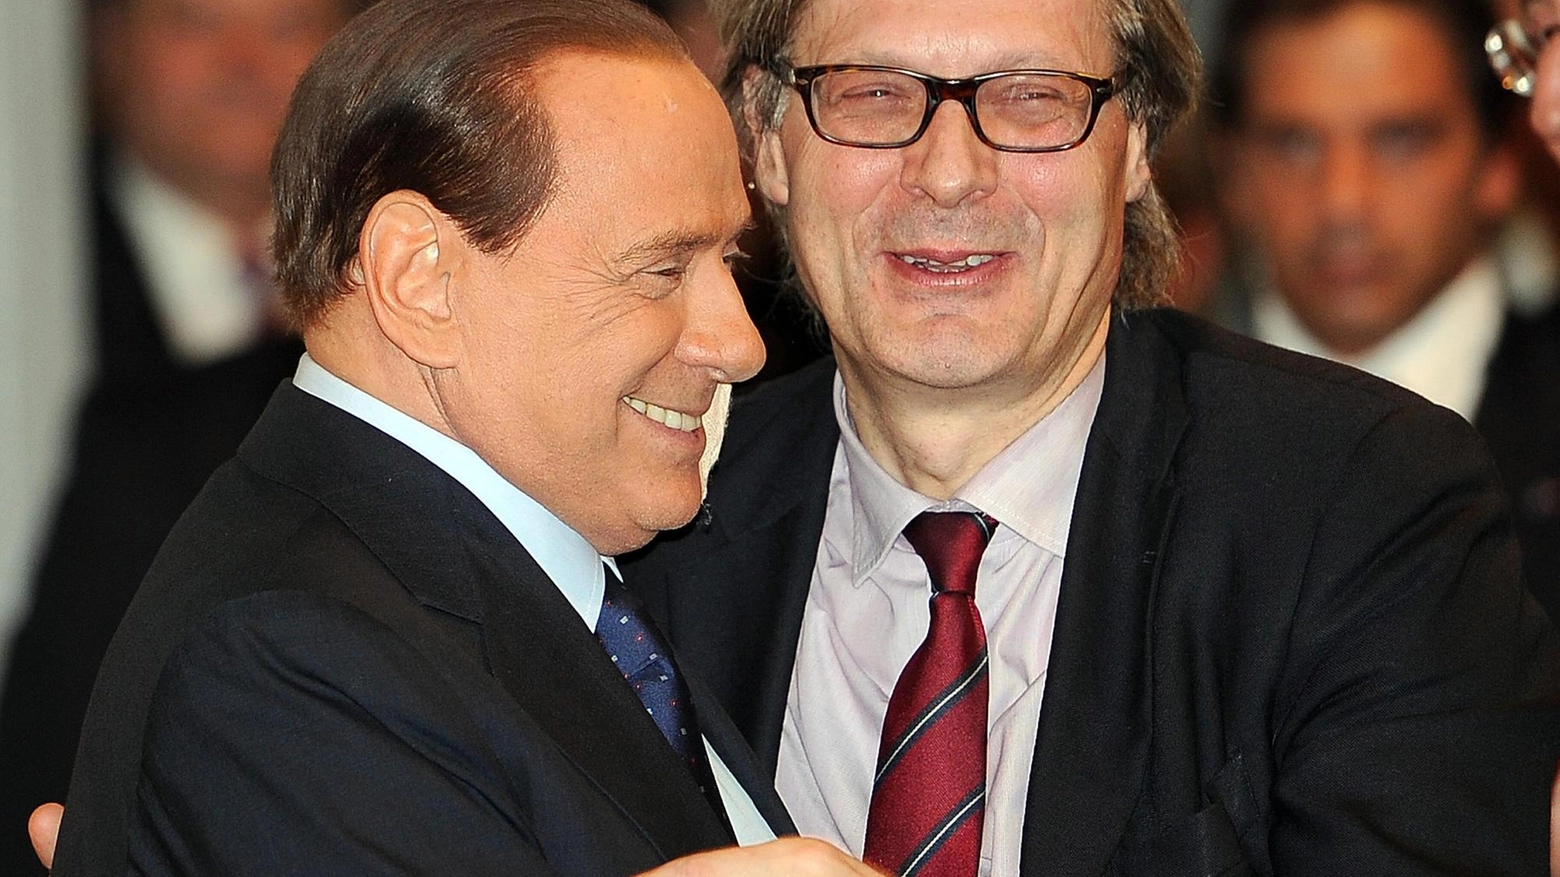 Silvio Berlusconi (85 anni) abbraccia Vittorio Sgarbi (69). I due sono amici di lunga data